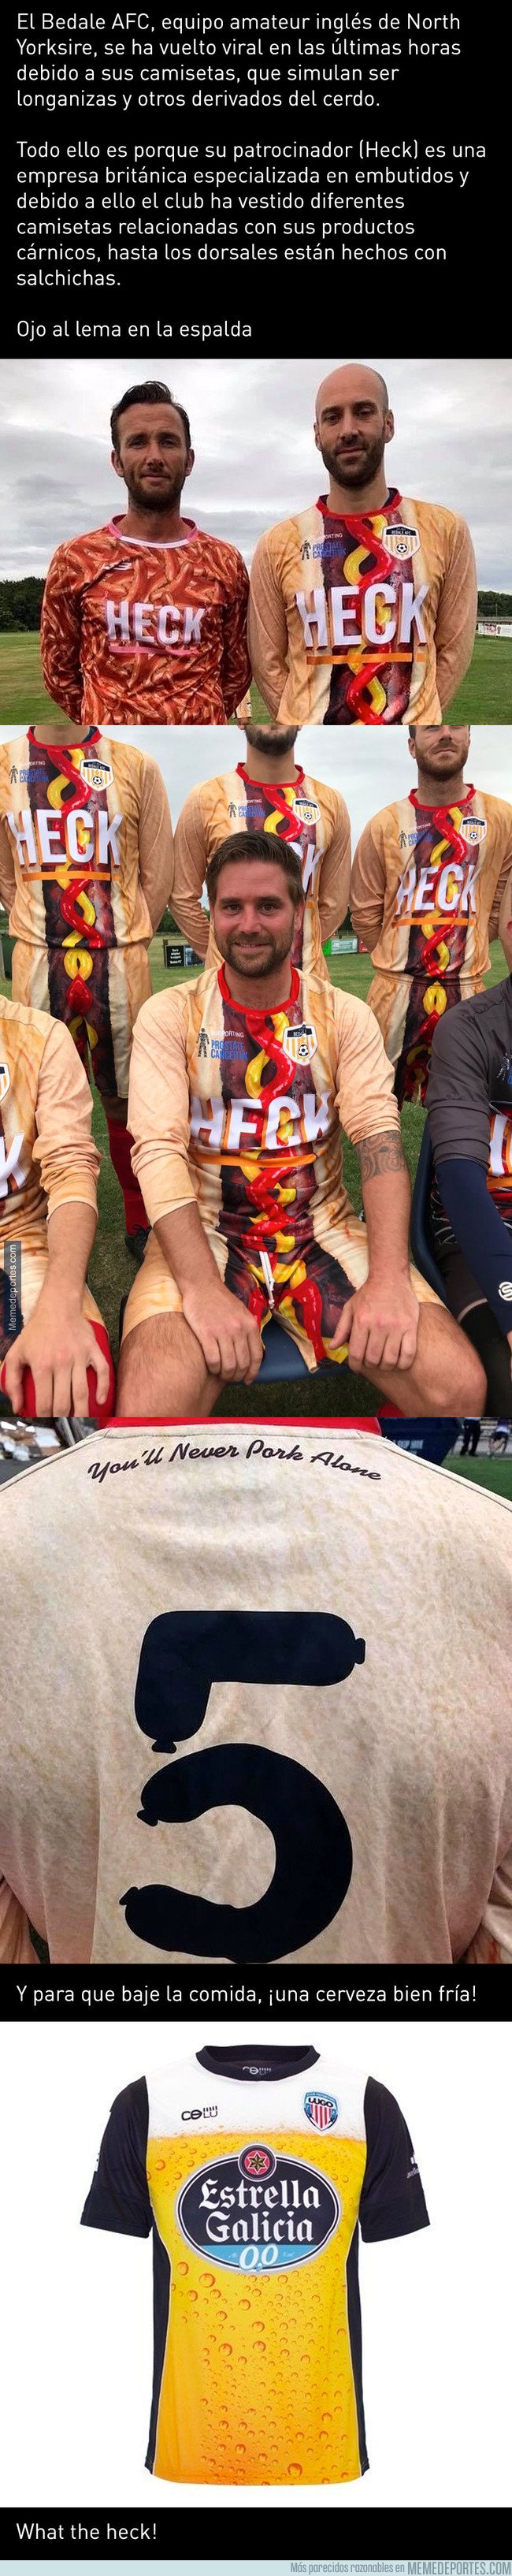 1046169 - El Bedale AFC presenta las camisetas más asquerosas del mundo del fútbol